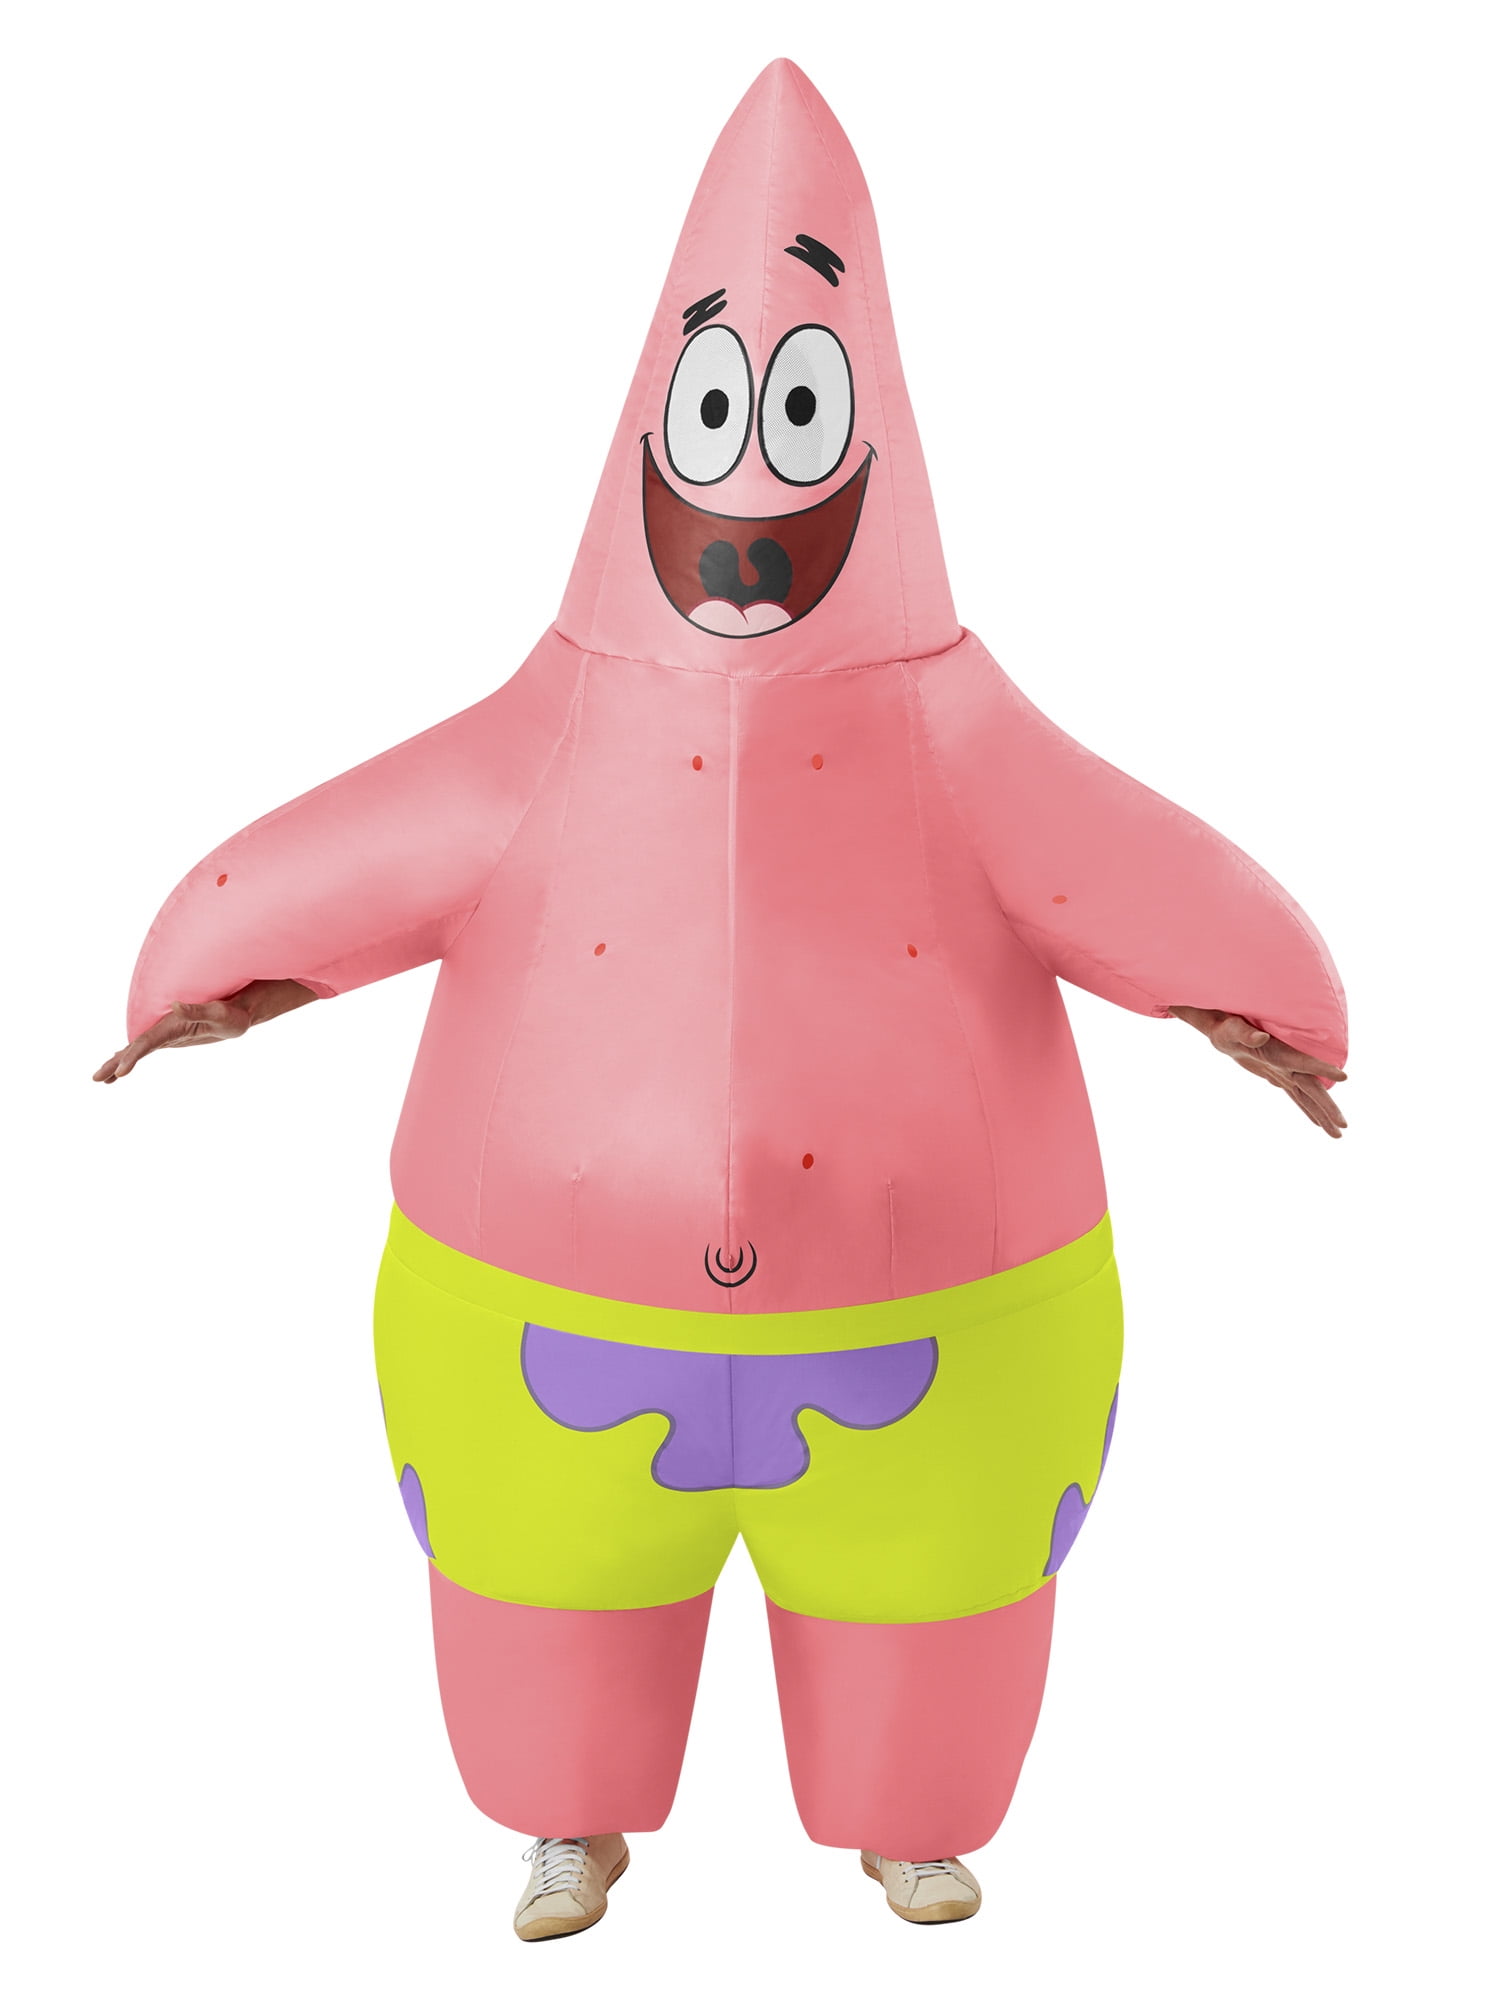 Spongebob And Patrick Outfits | escapeauthority.com